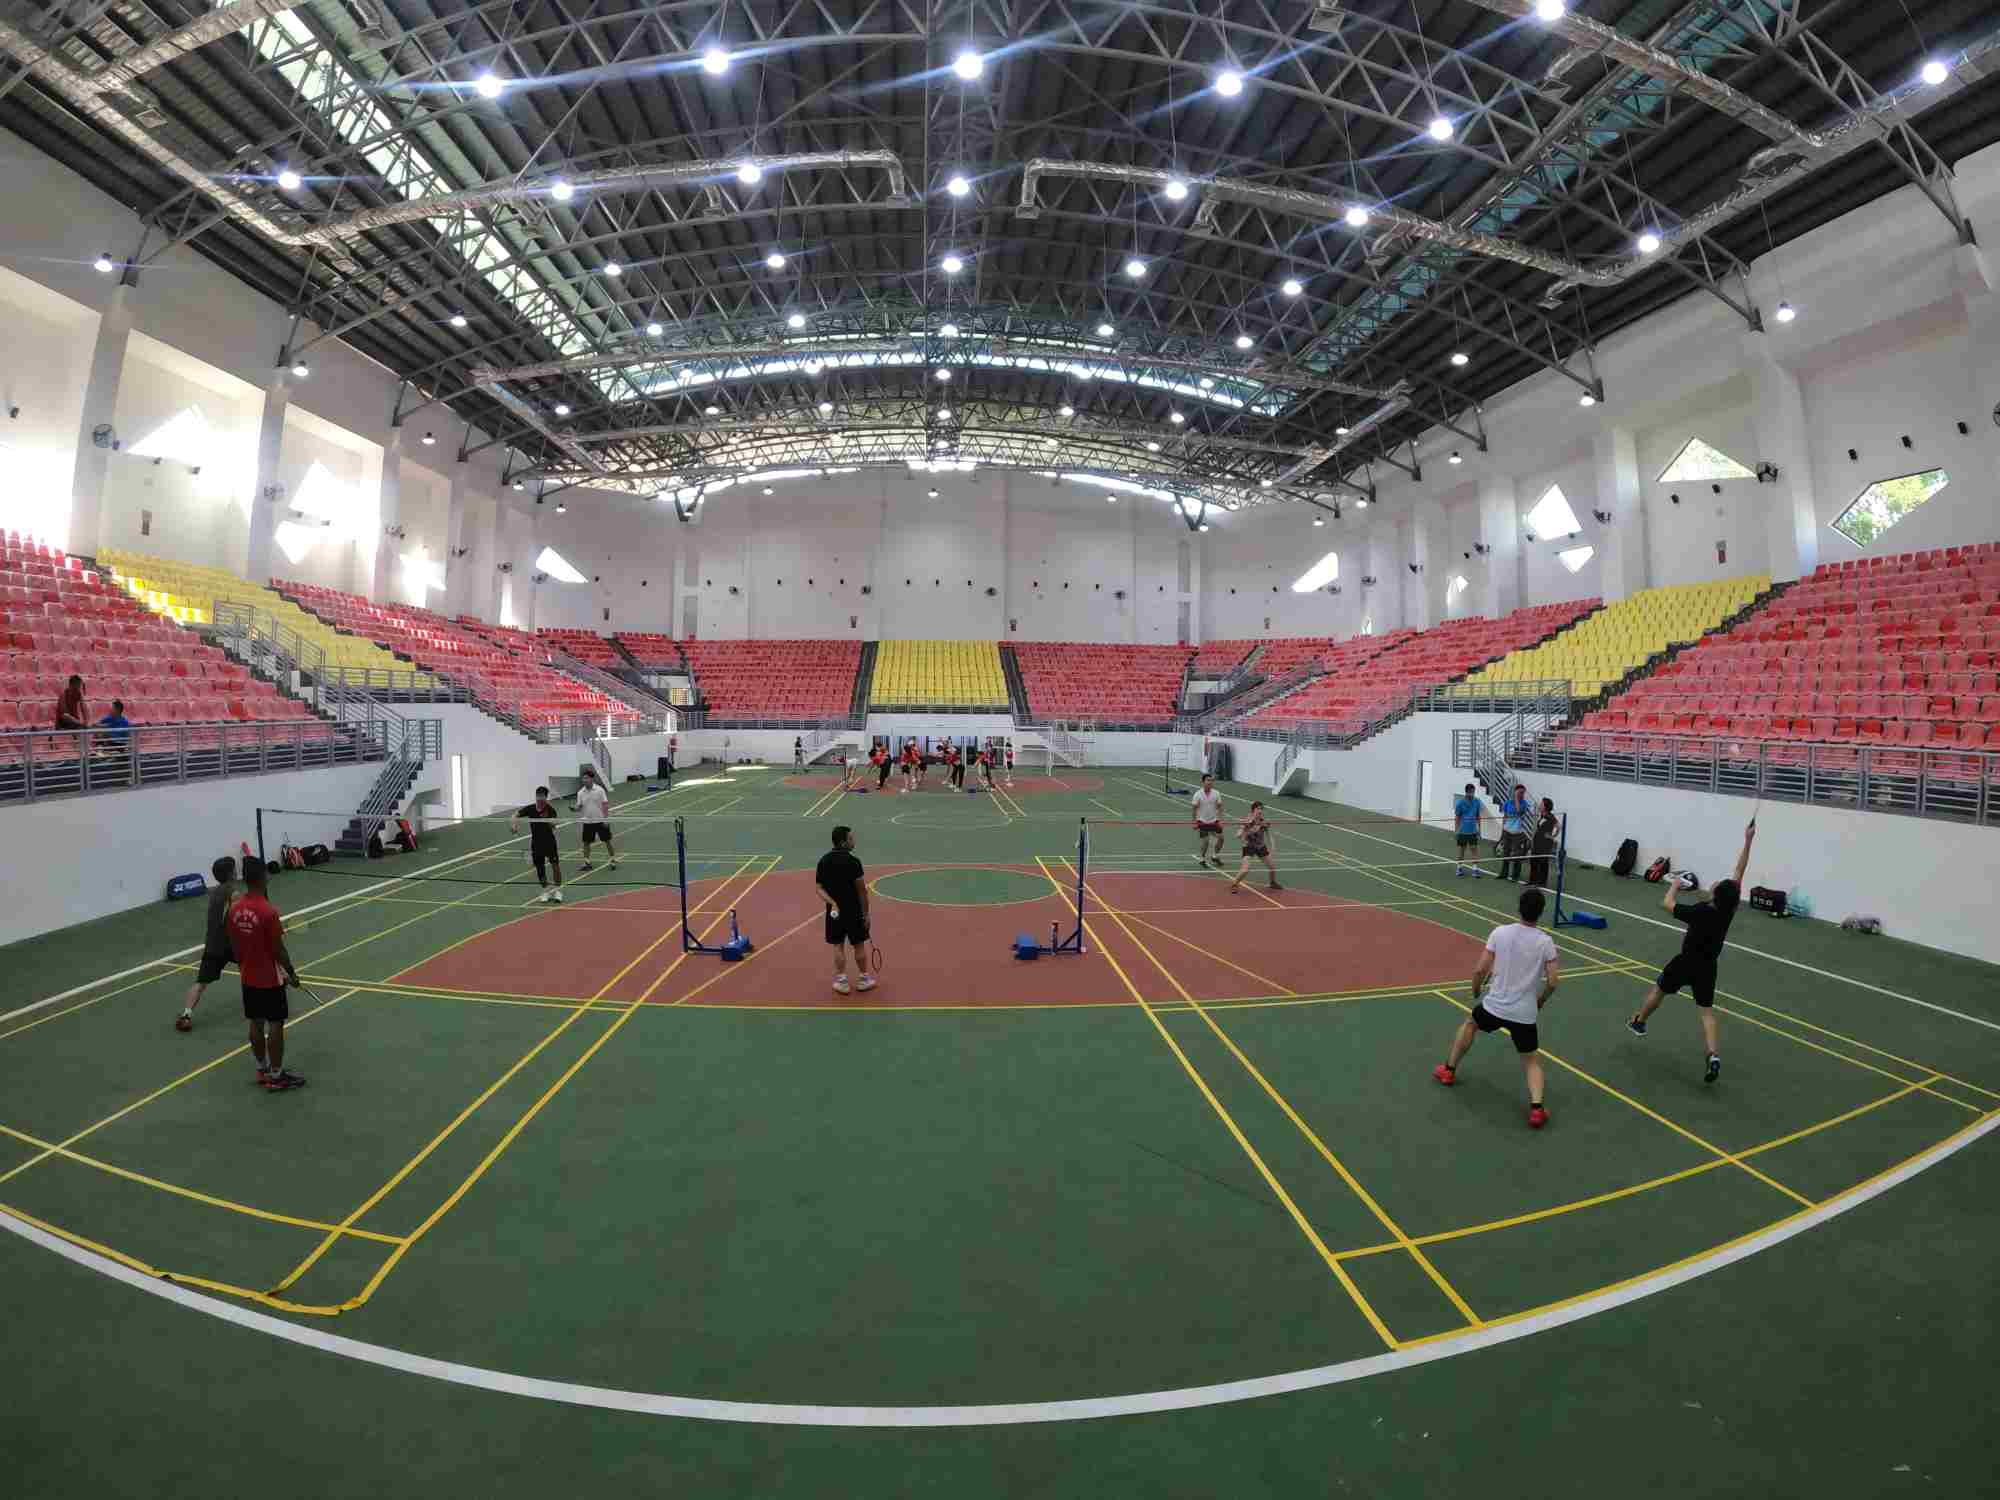 Trung tâm Văn hóa Công nhân Lao động đi vào hoạt động, cung cấp thêm sân chơi rèn luyện thể thao cho người lao động tại đây.